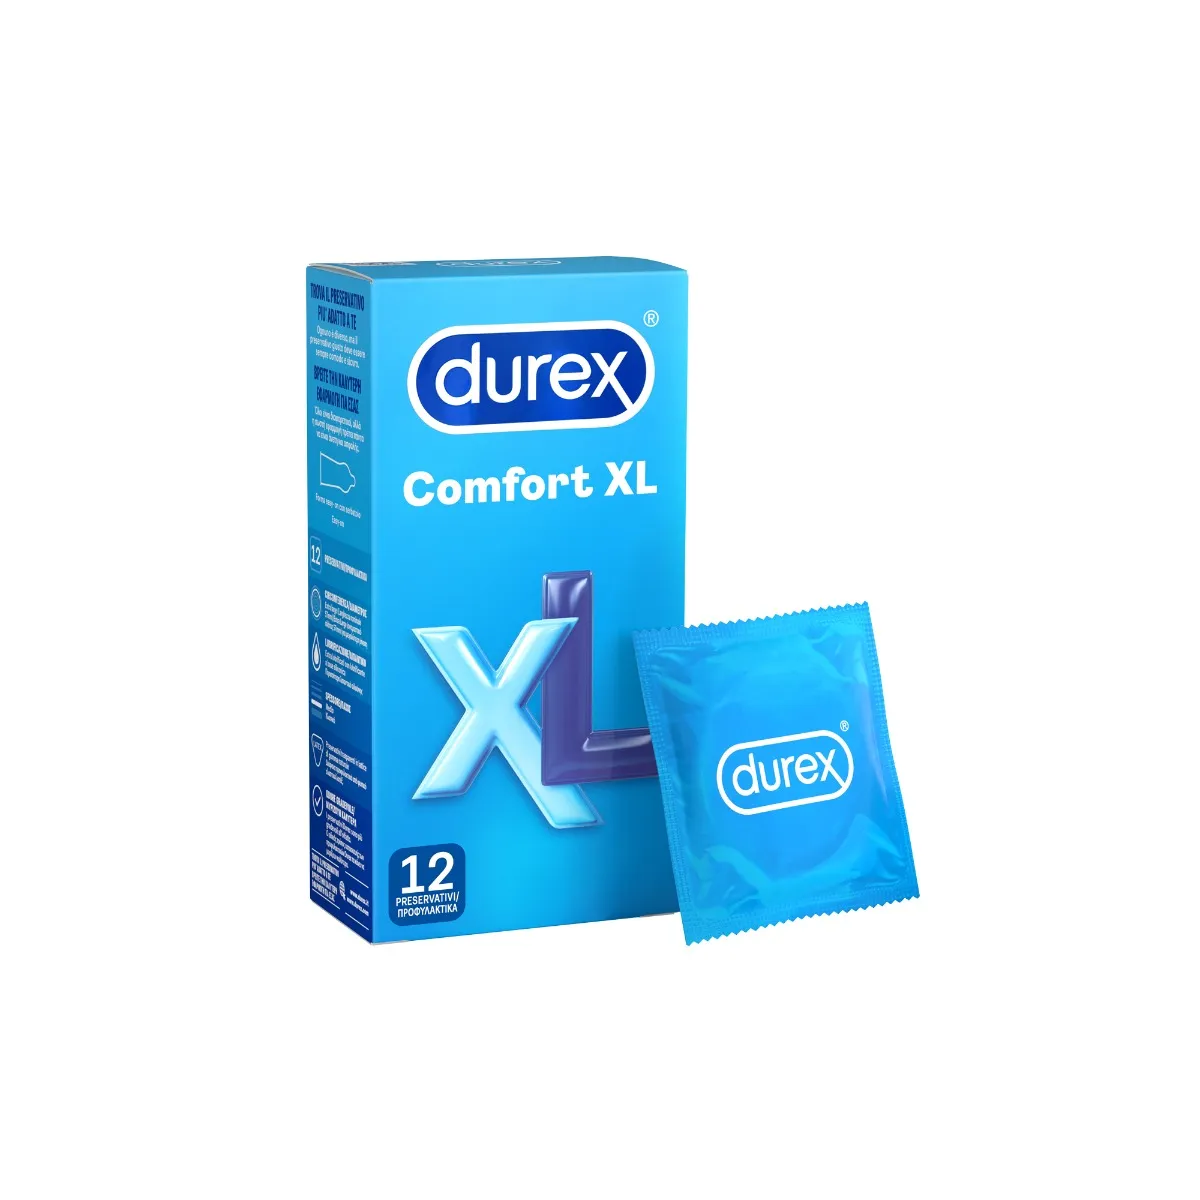 Durex Comfort XL 12 Profilattici Extra-large 